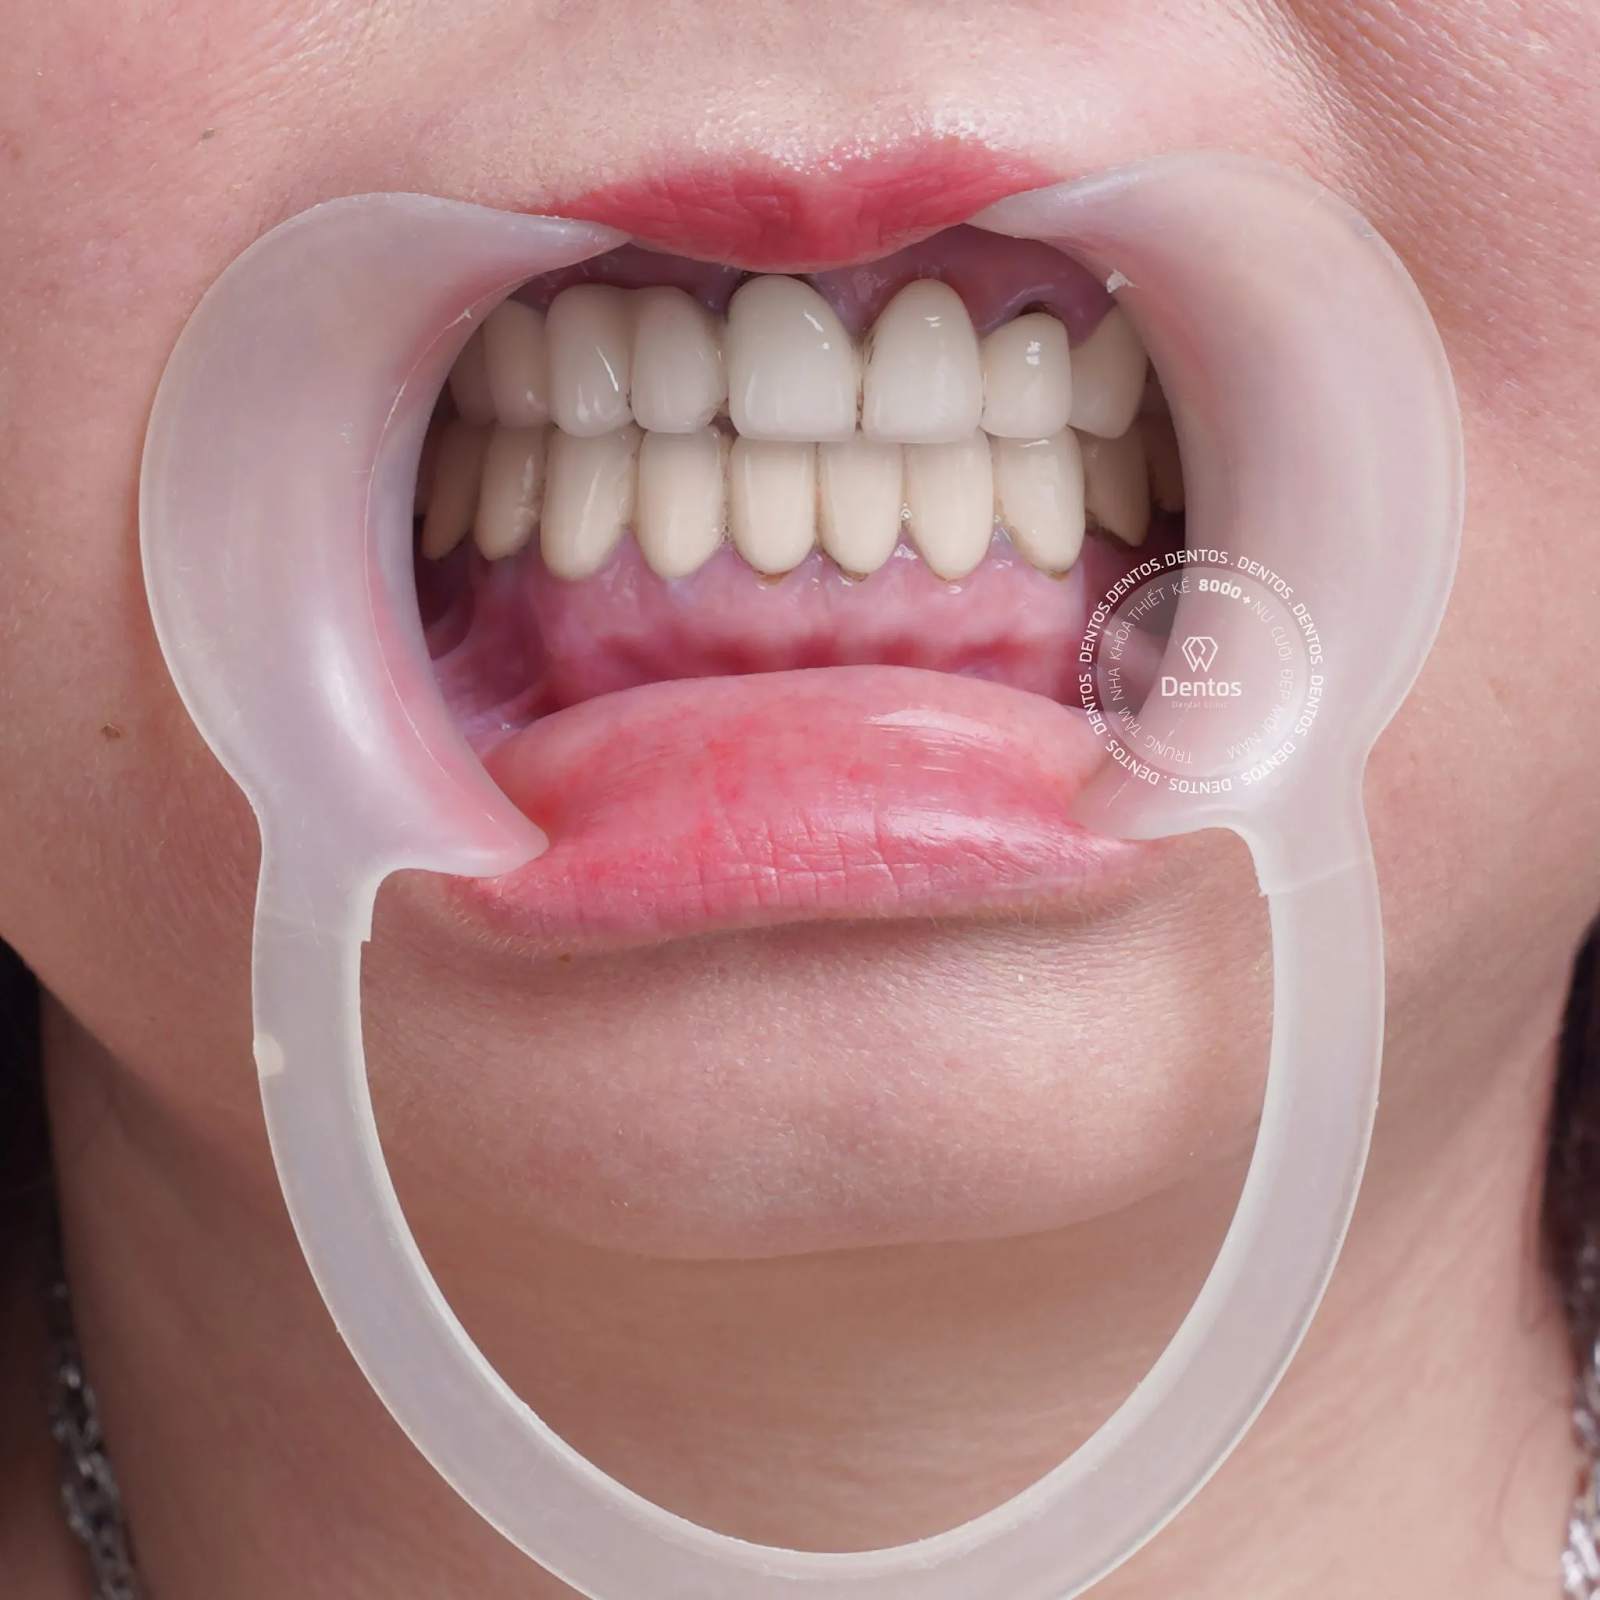 So sánh ưu nhược điểm các loại răng sứ hiện nay - Loại nào sẽ tốt nhất?